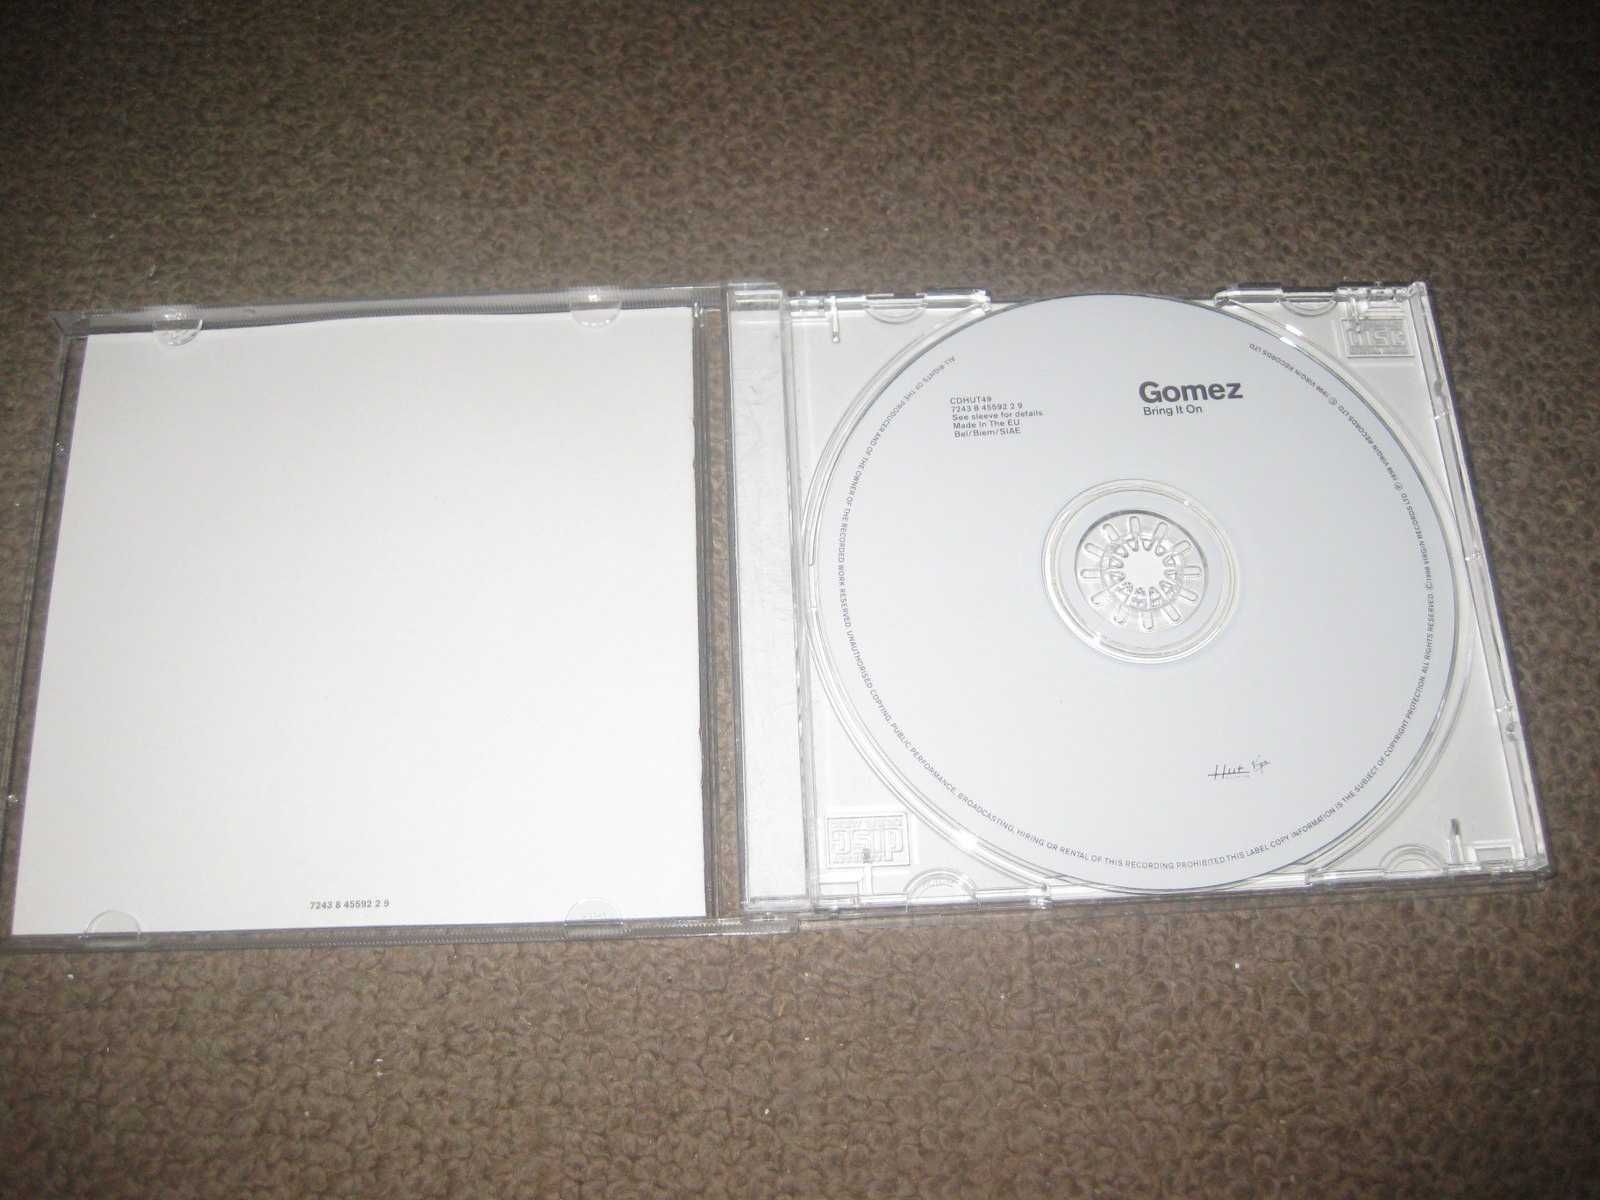 CD dos Gomez "Bring It On" Portes Grátis!